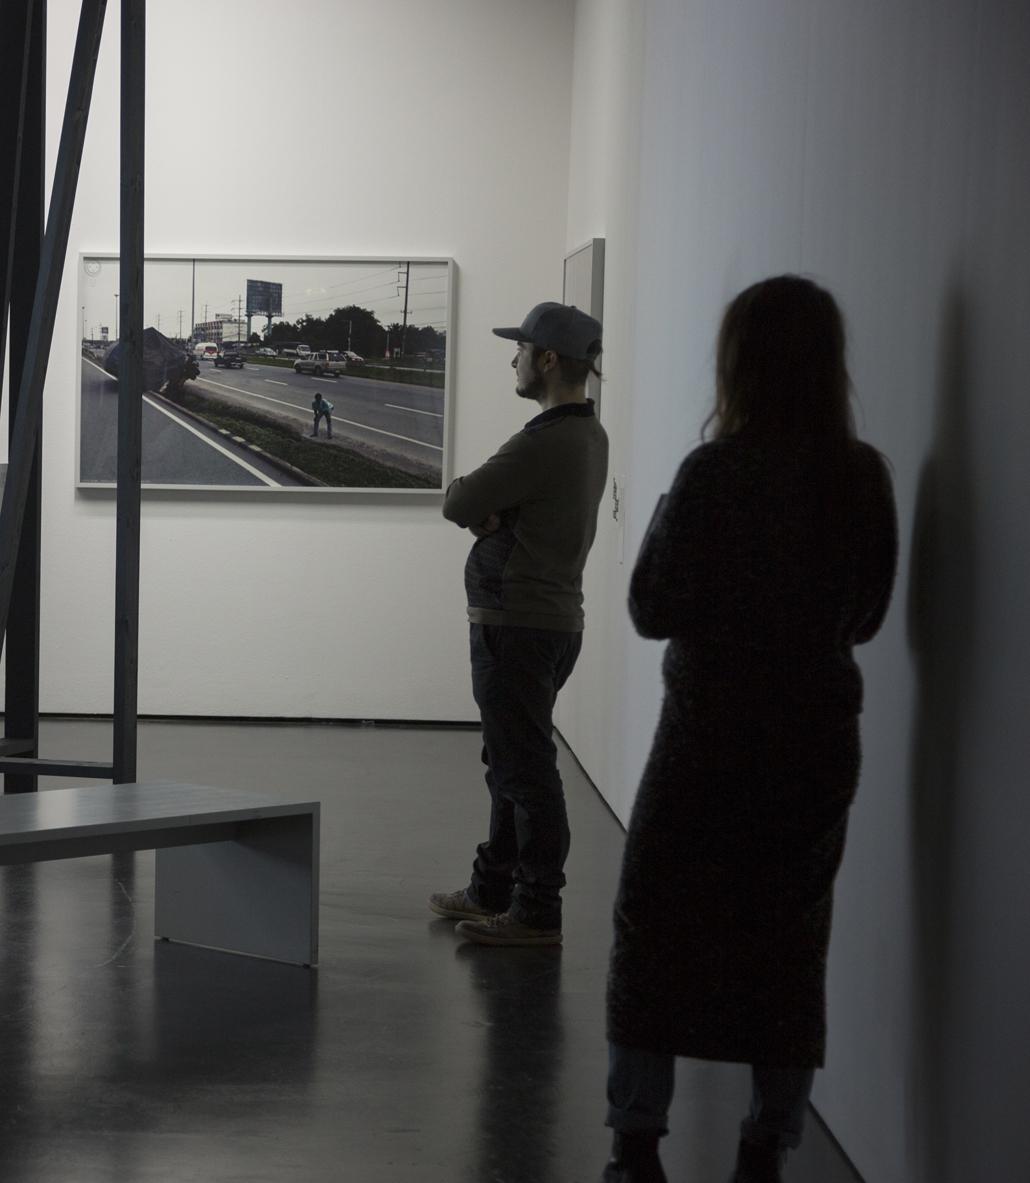 Zwei Menschen betrachten ein Bild an der Wand